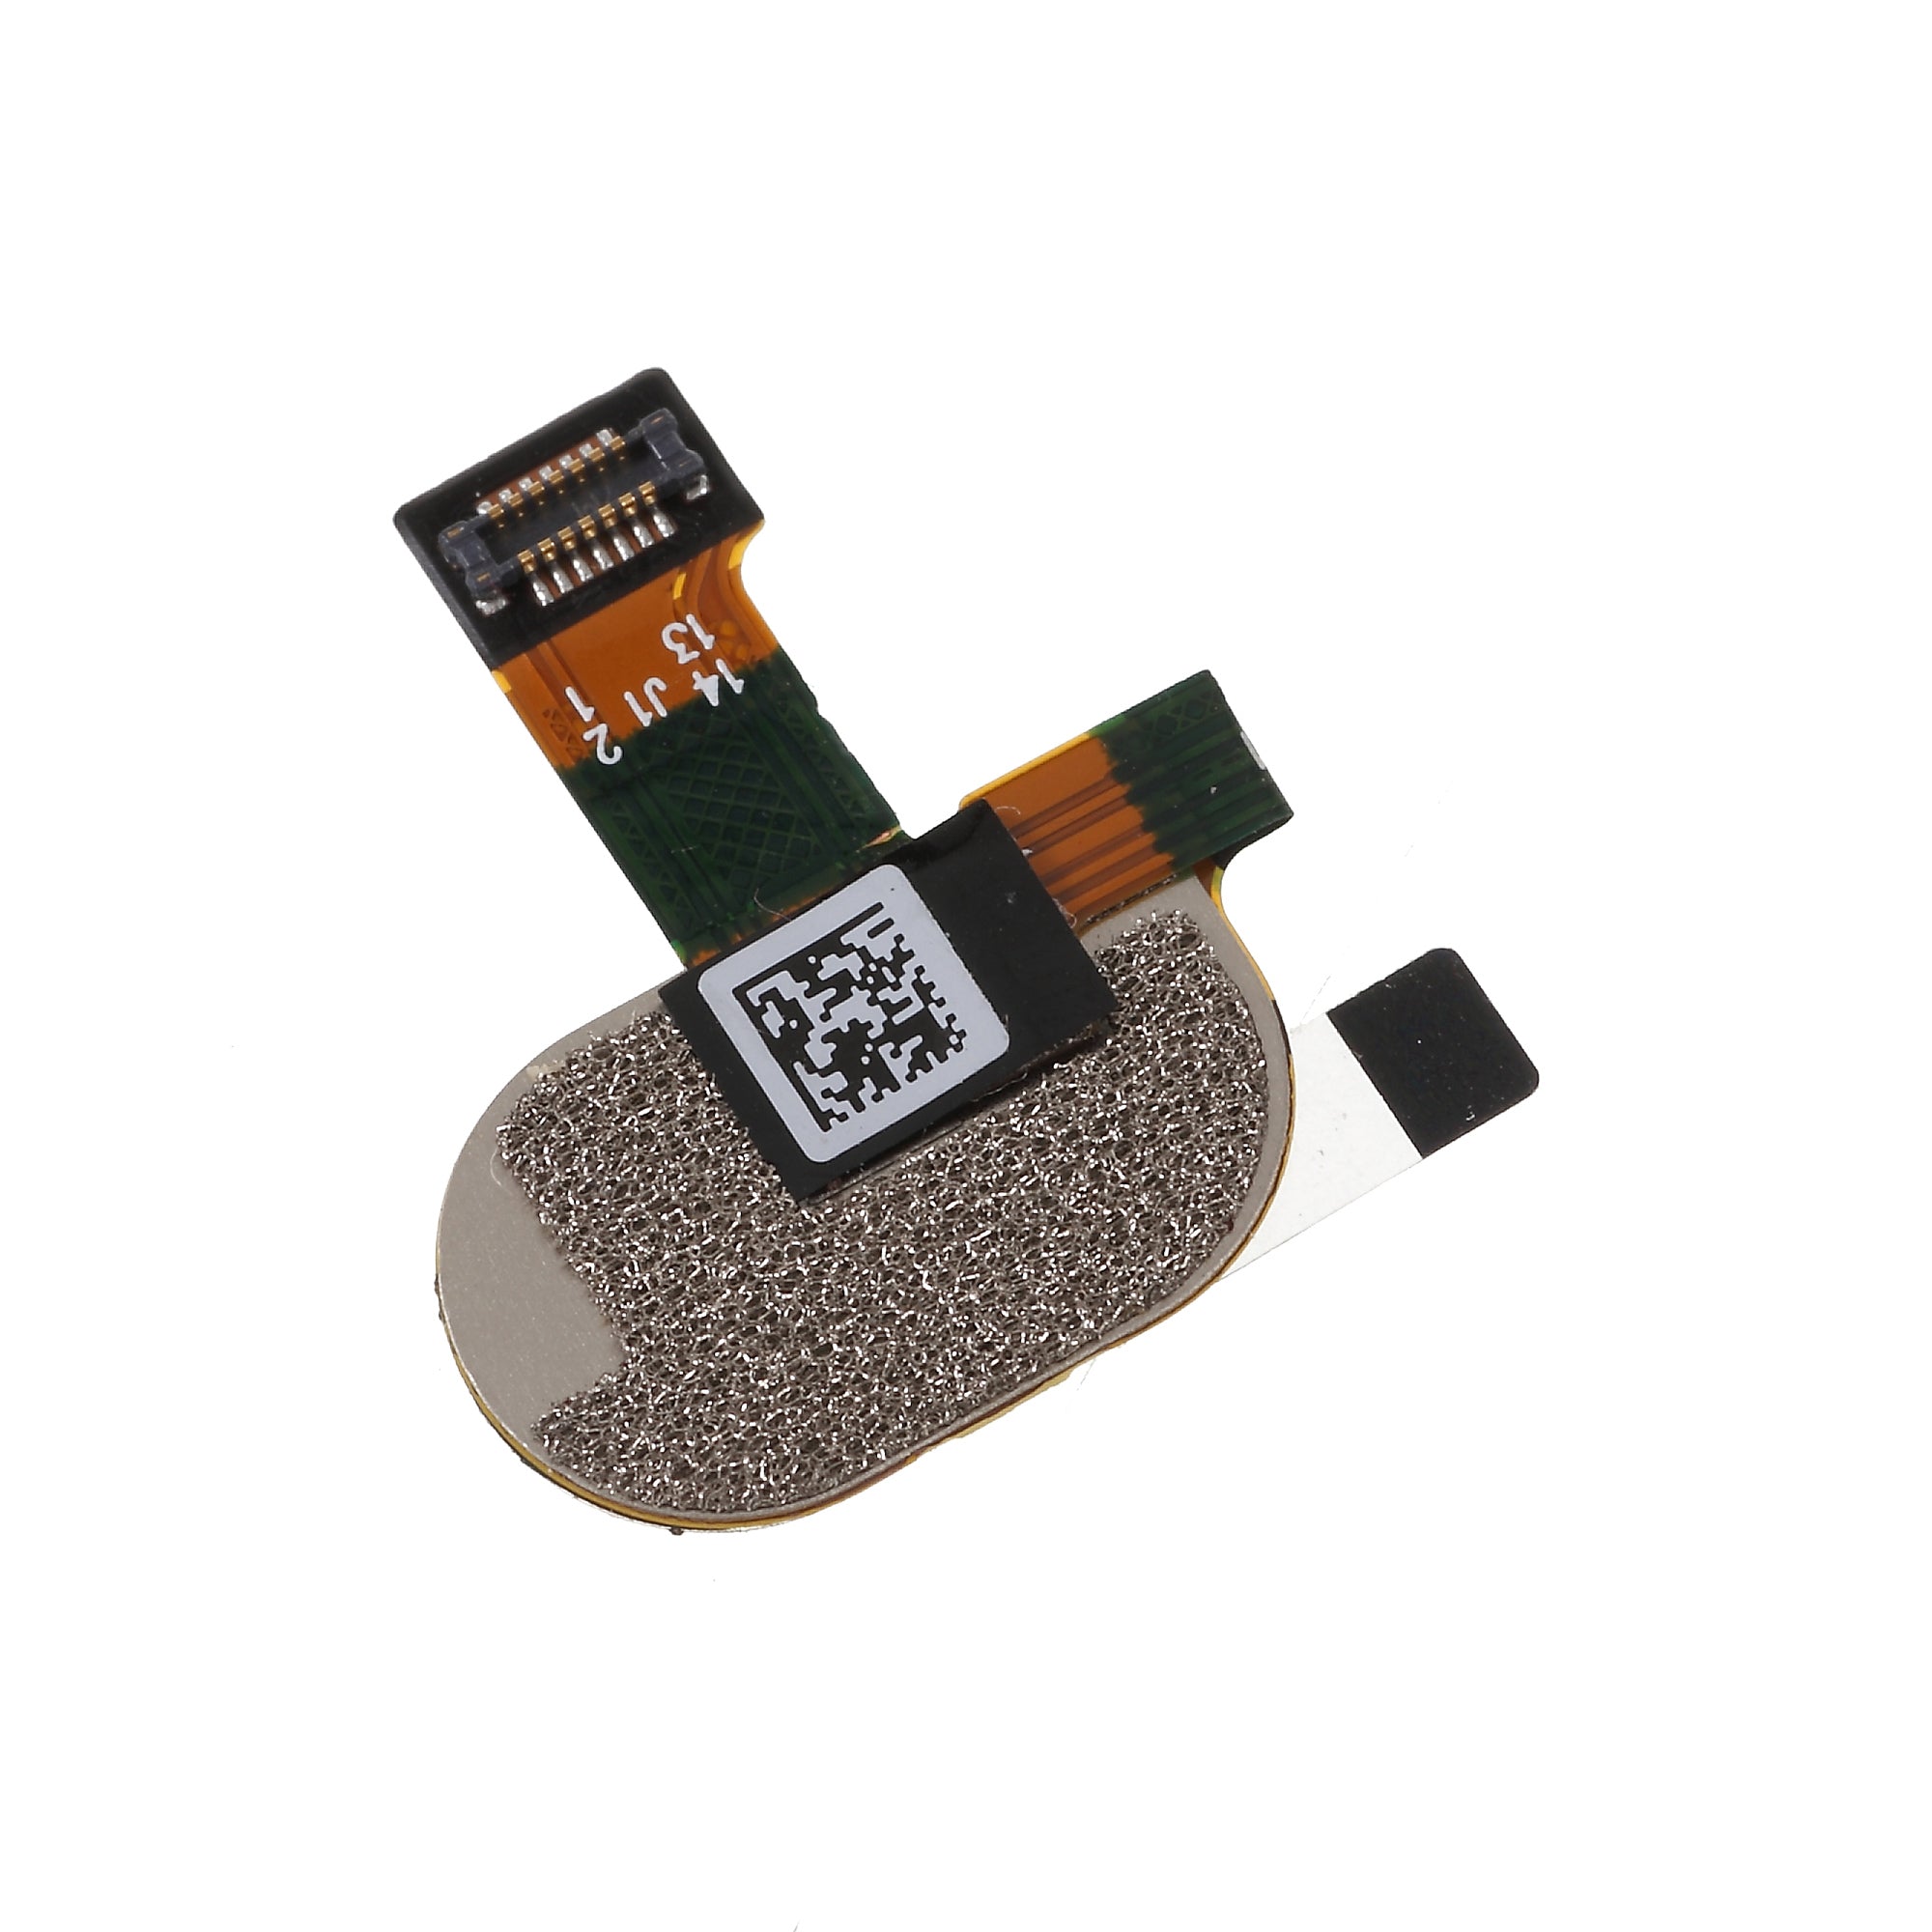 OEM Home Key Fingerprint Button Flex Cable Part Replacement for Motorola Moto E4 - Gold